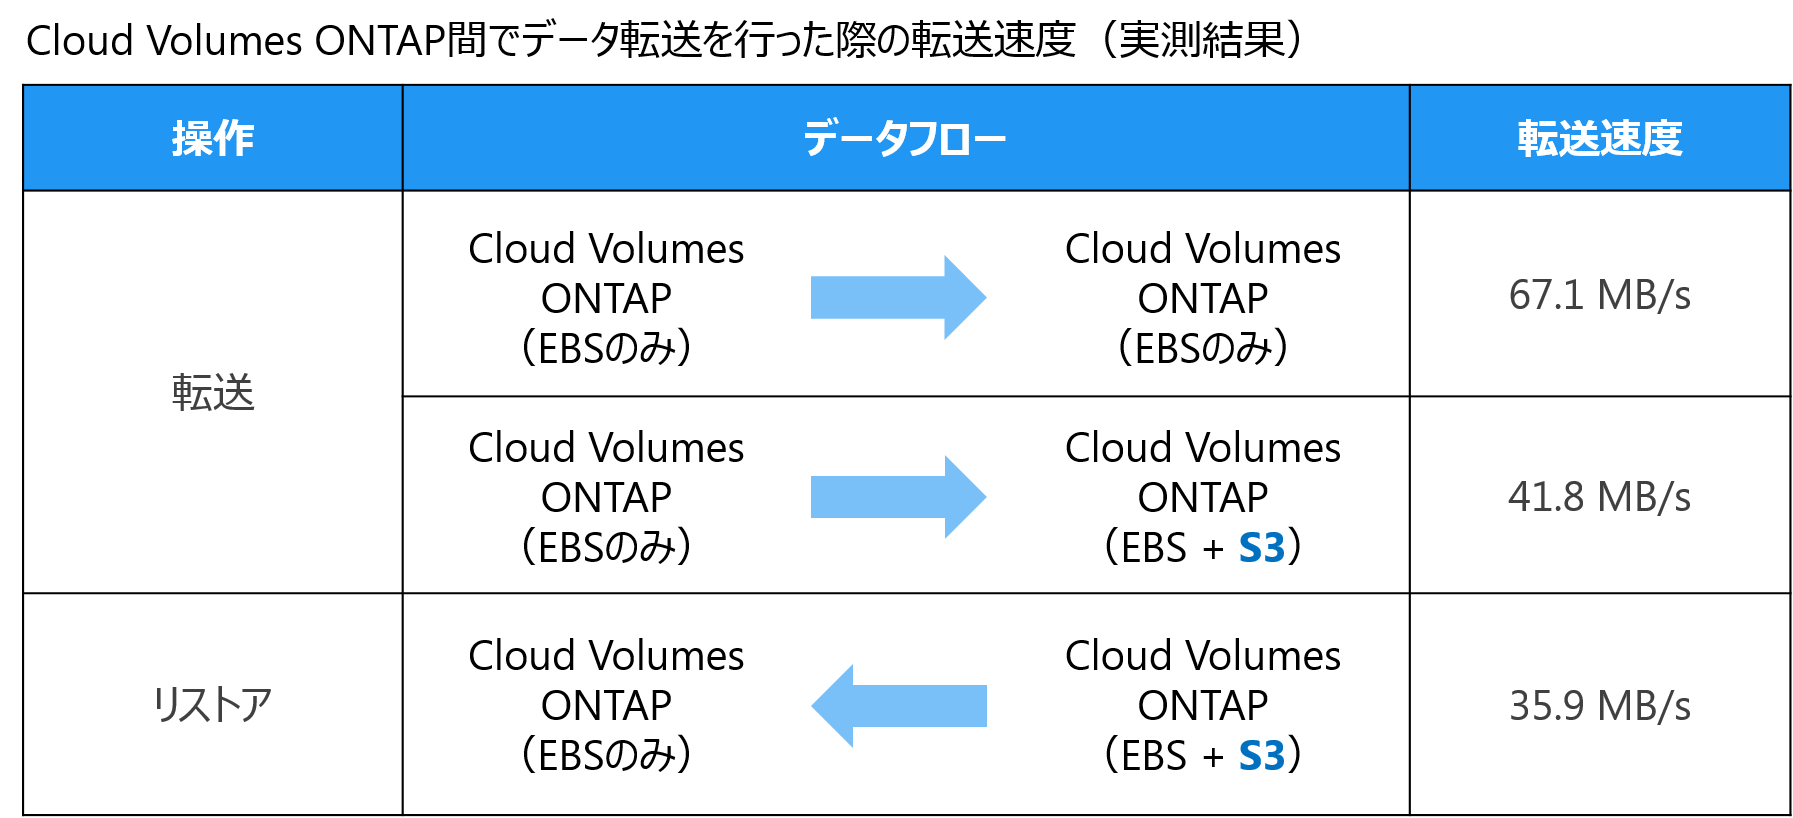 表1：EBS構成とS3連携構成とのパフォーマンス比較